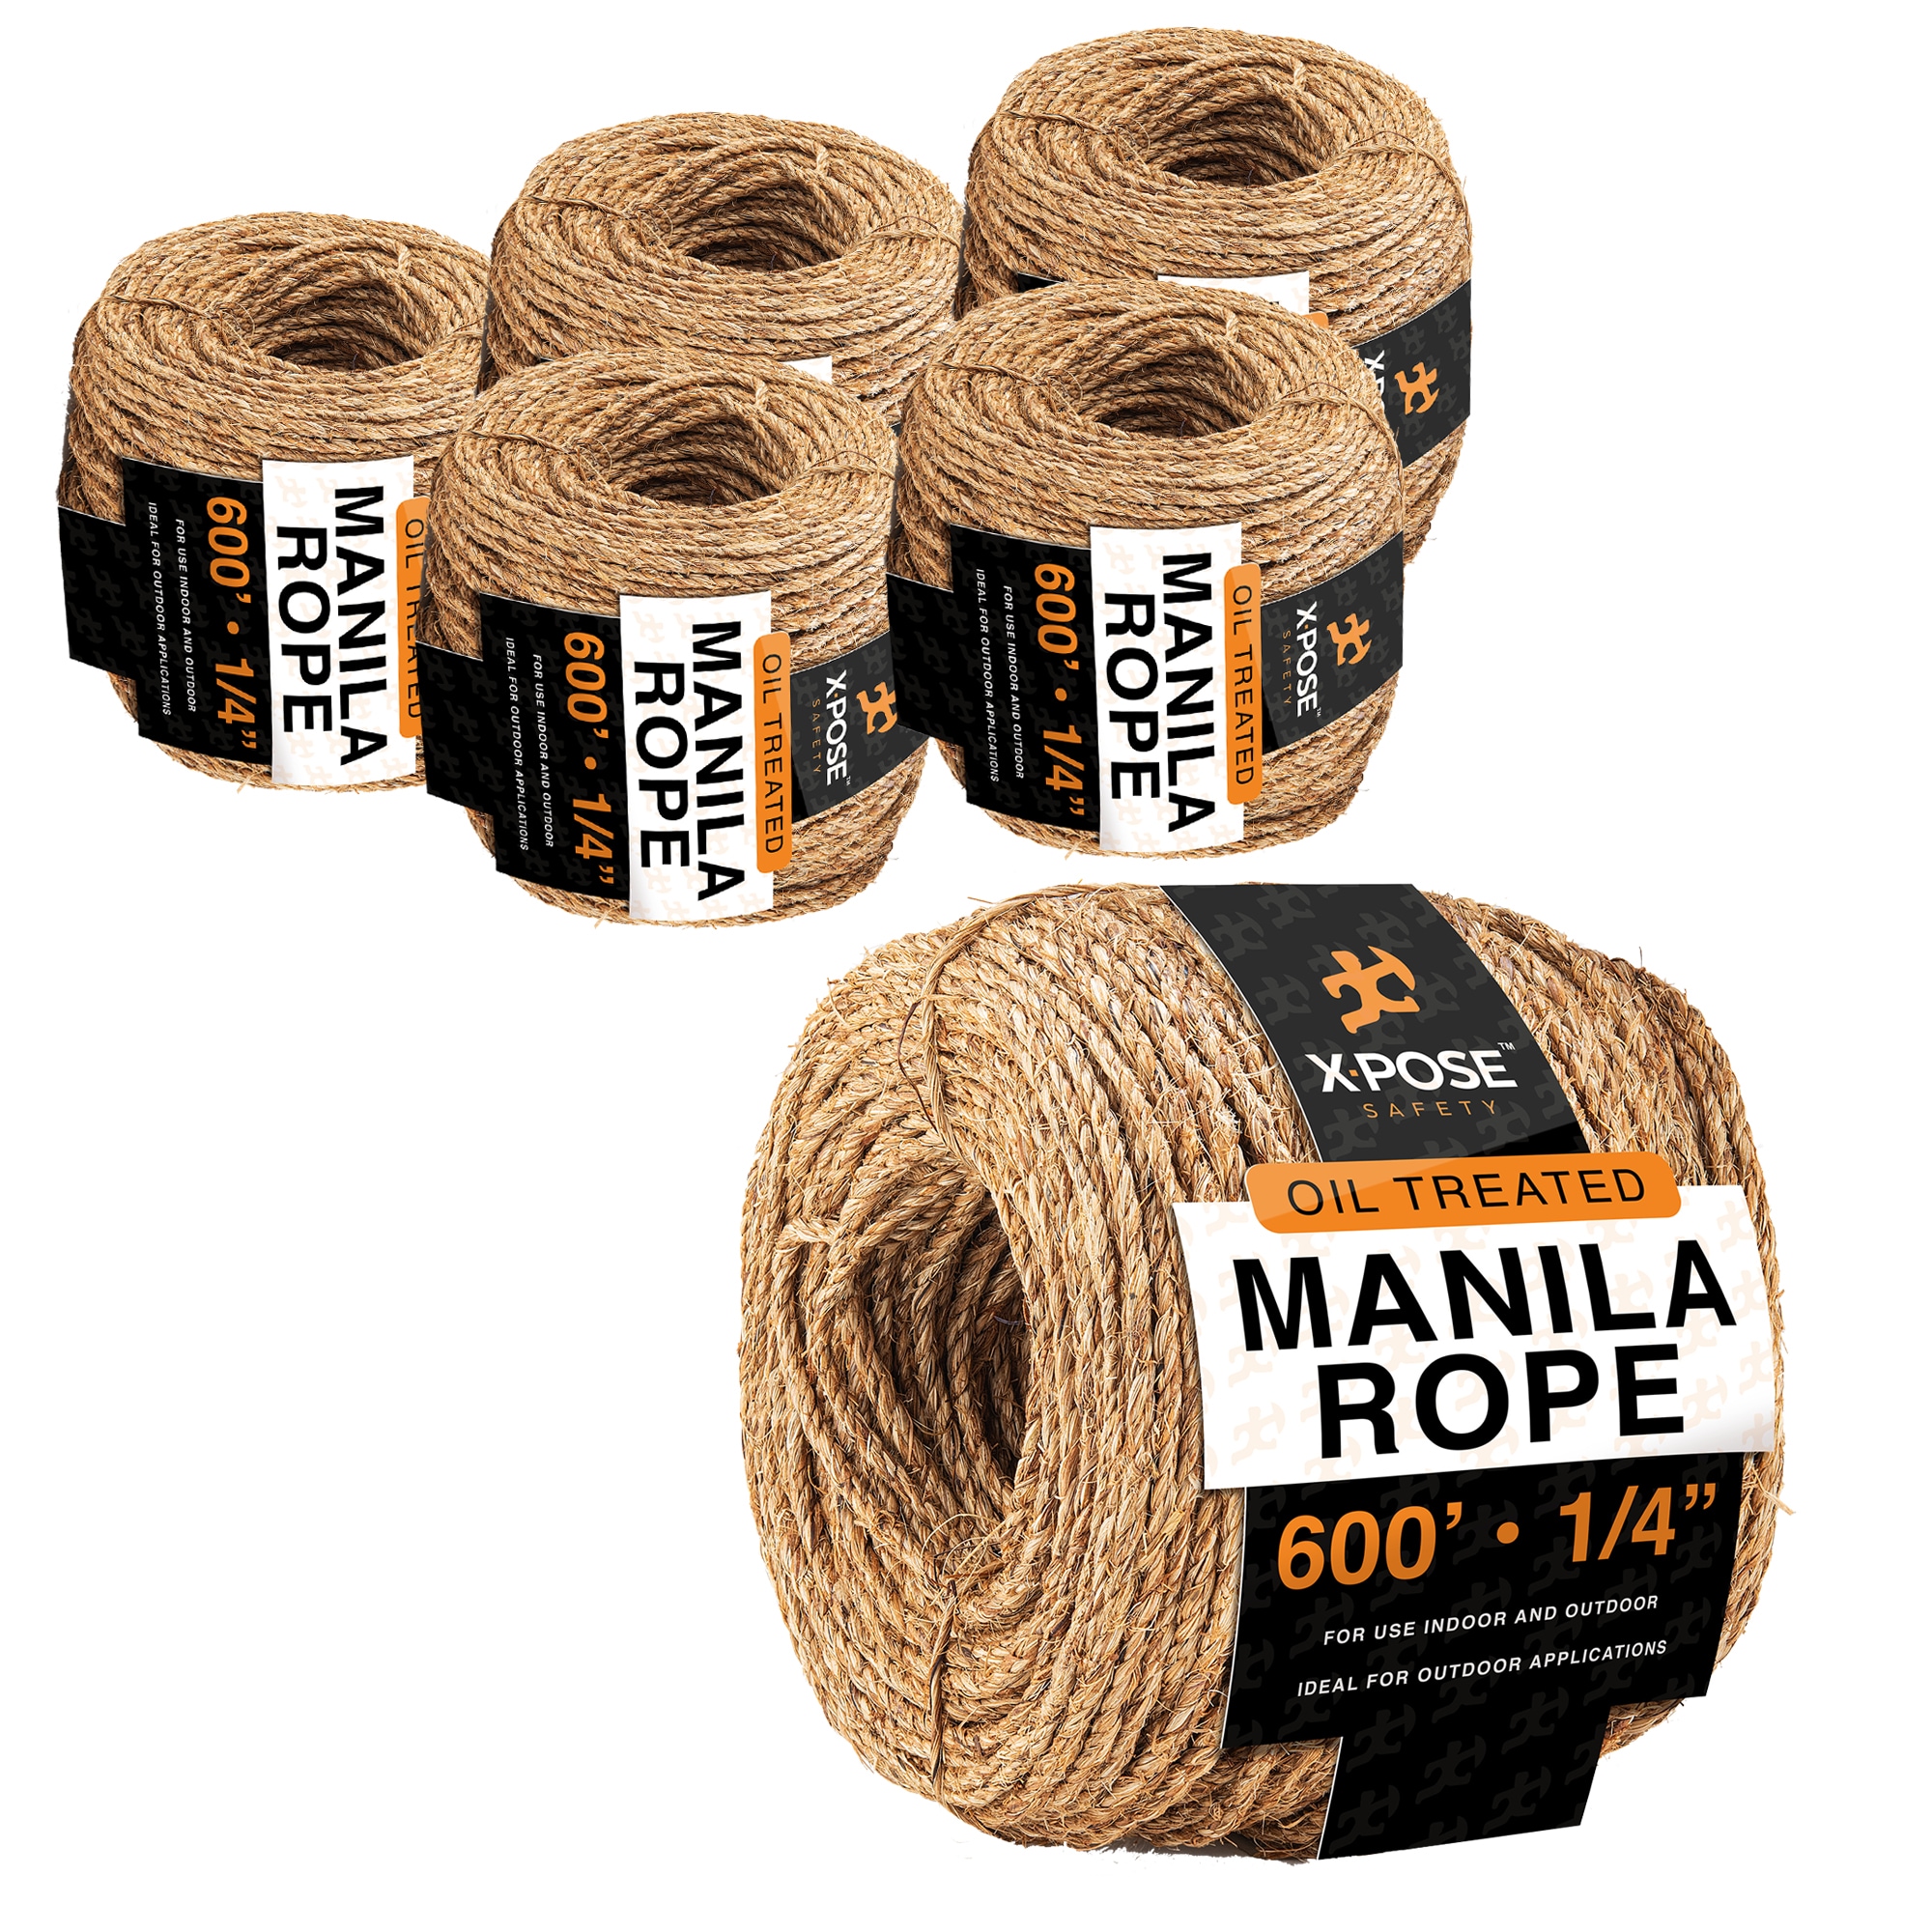 XPOSE SAFETY Manila Rope - 1/4 Inch Rope 600 Ft - 3 Strand Cordage